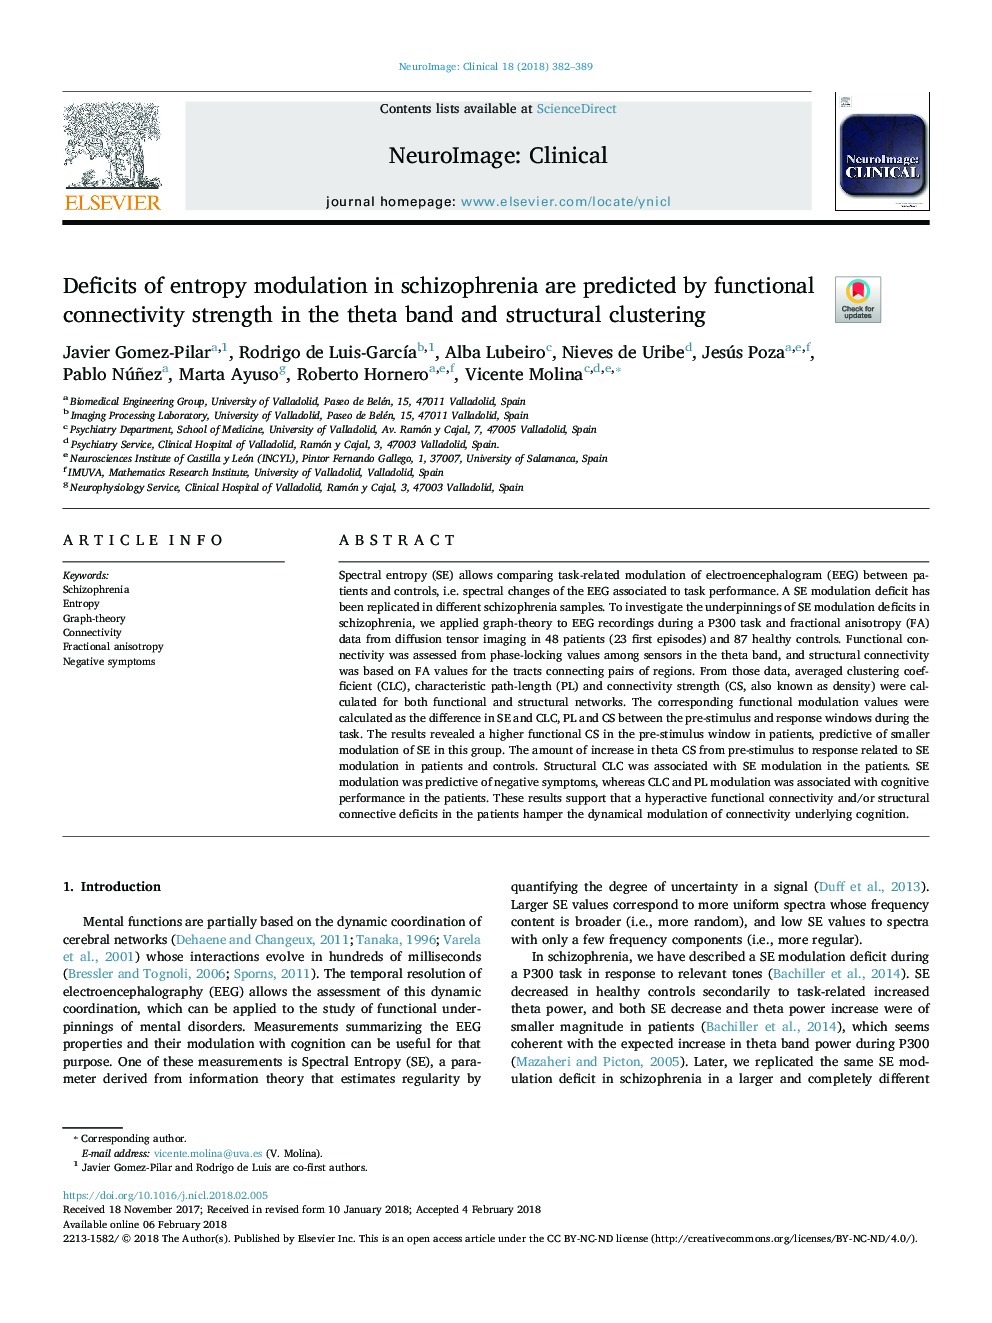 ضعف مدولاسیون آنتروپی در اسکیزوفرنی با استحکام اتصال به عملکرد در گروه تتا و خوشه بندی ساختاری 